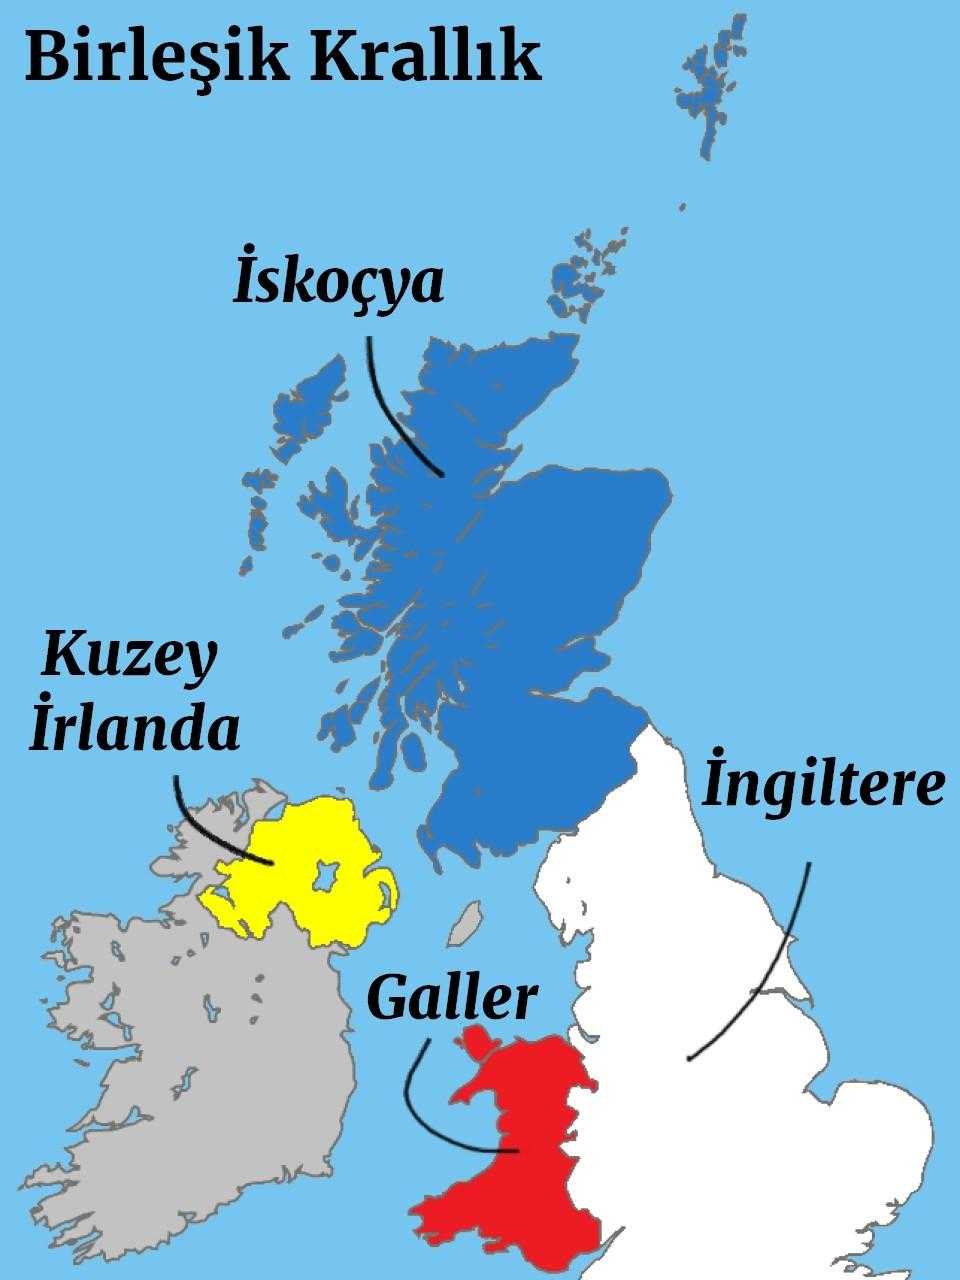 Birleşik Krallık: Kuzey İrlanda, İskoçya, İngiltere ve Galler